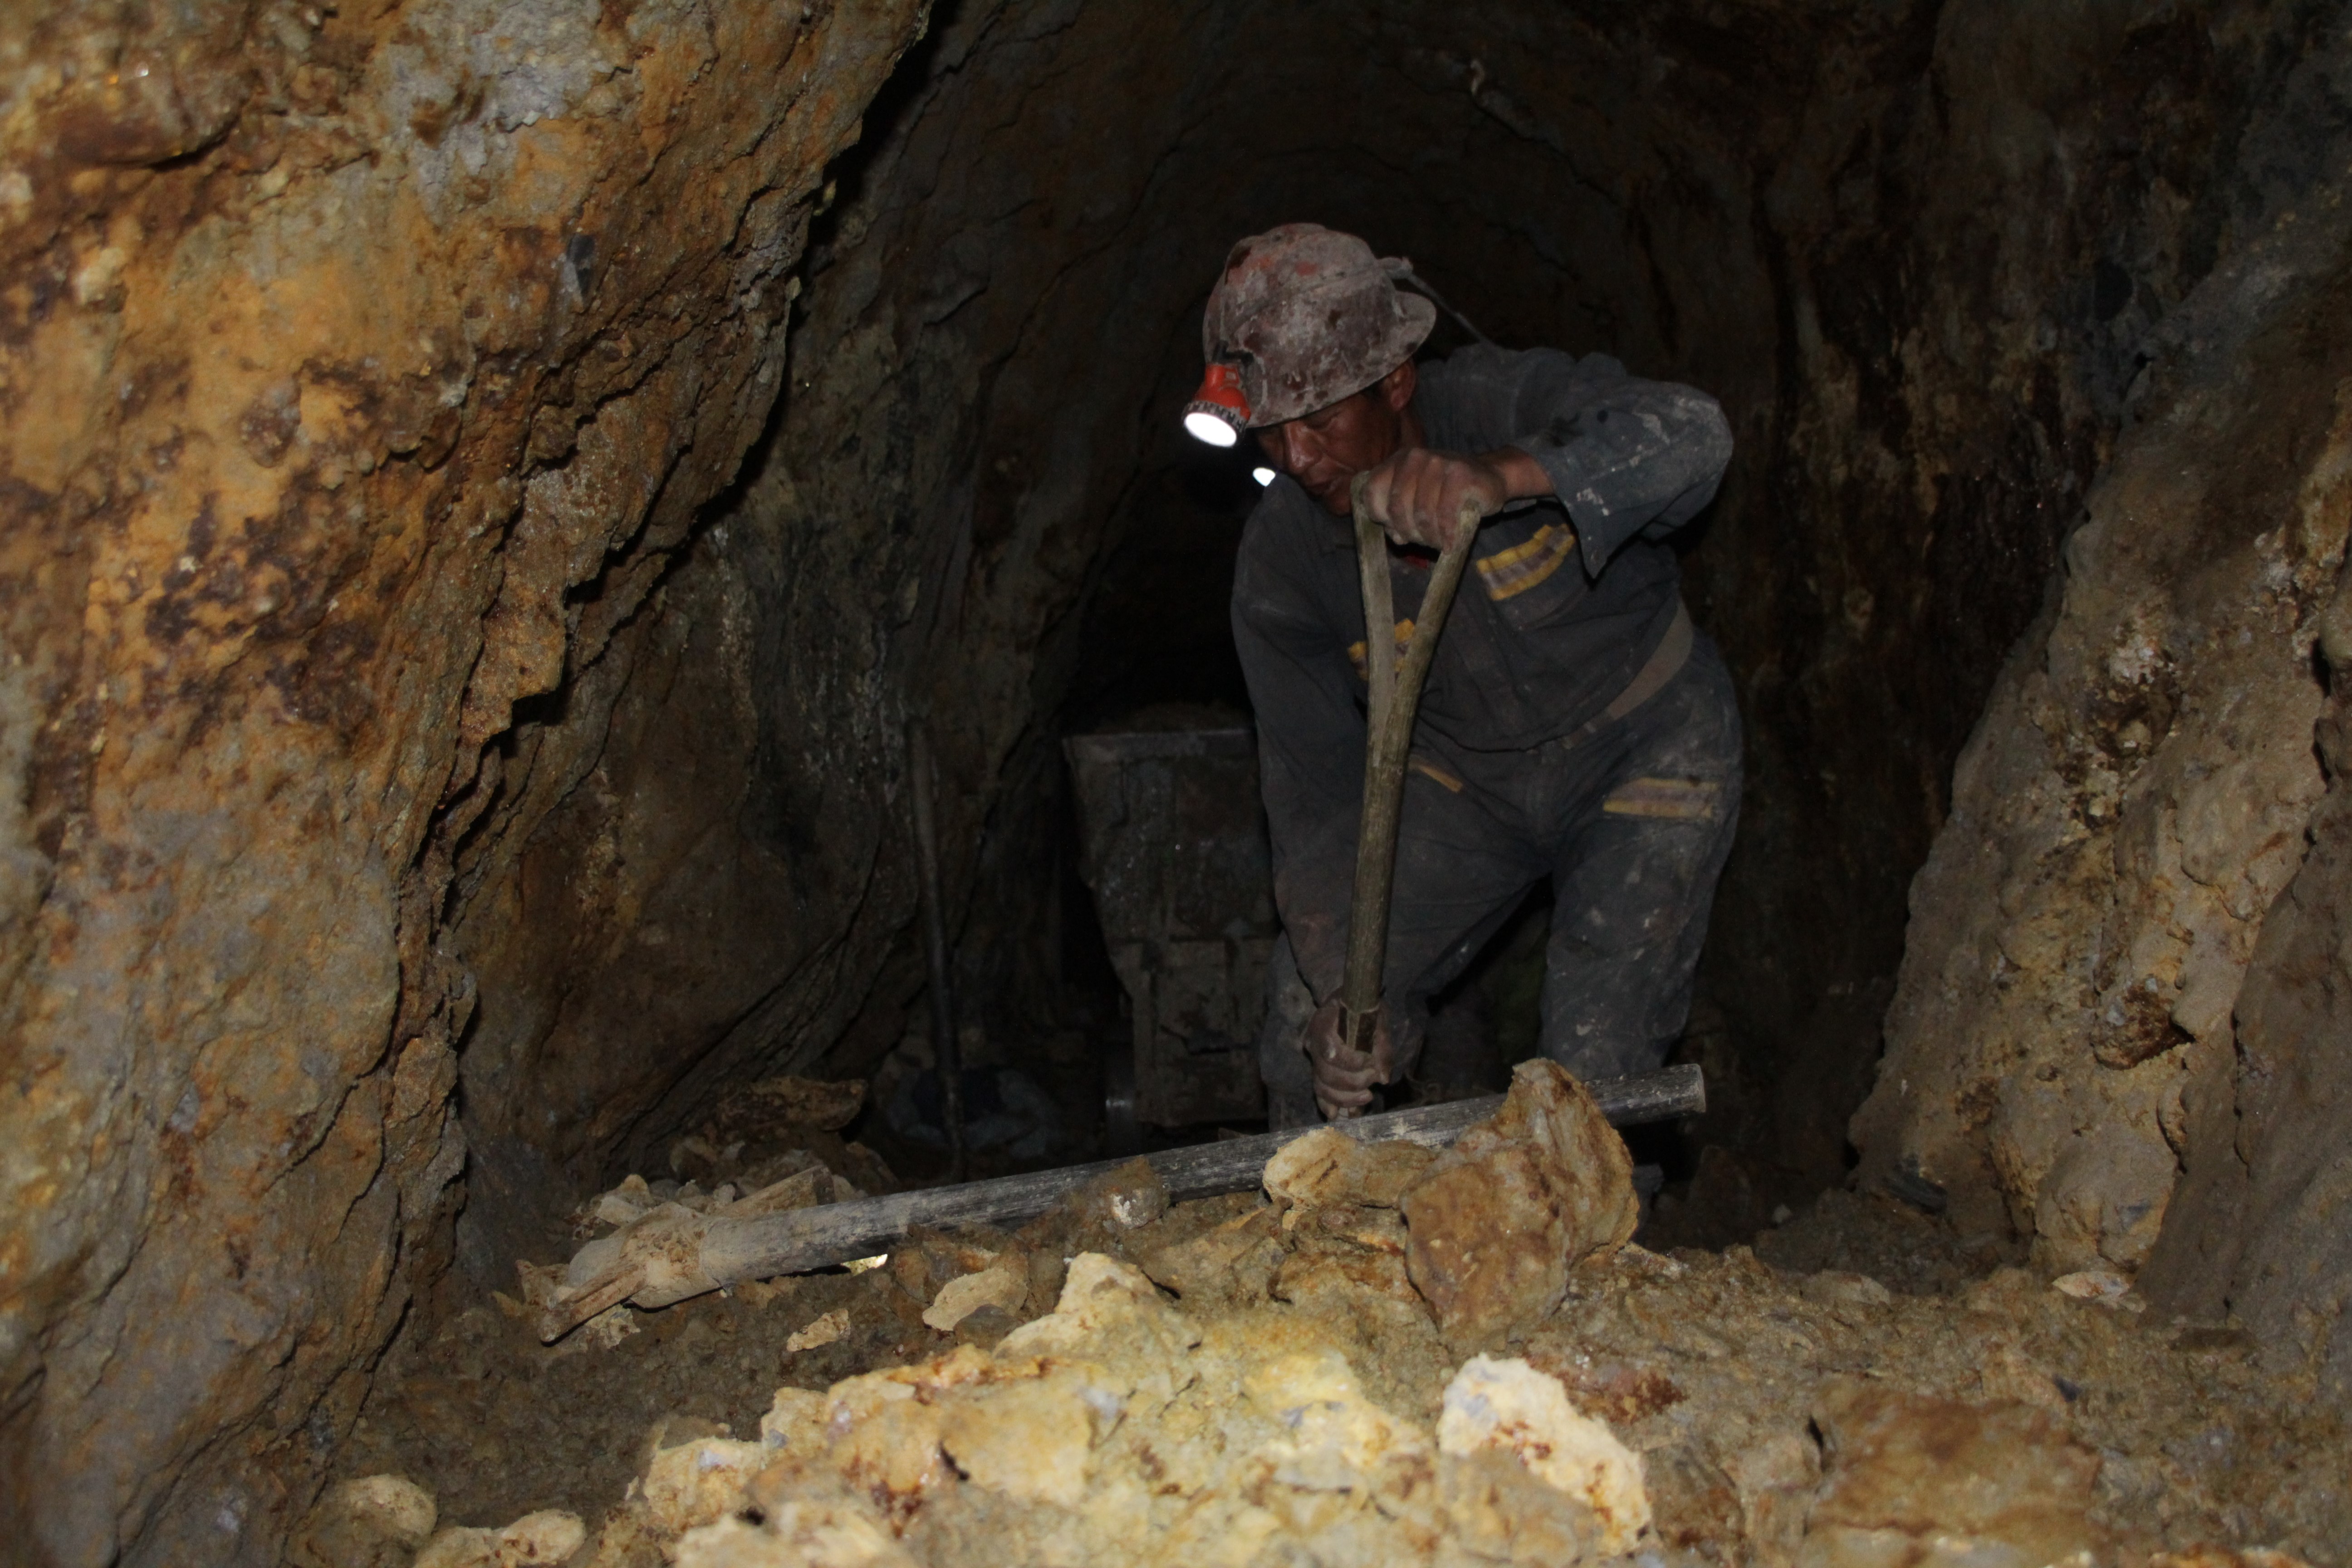 Un mineur creuse la roche manuellement pour tenter de trouver de l'argent (© Jérôme Decoster).